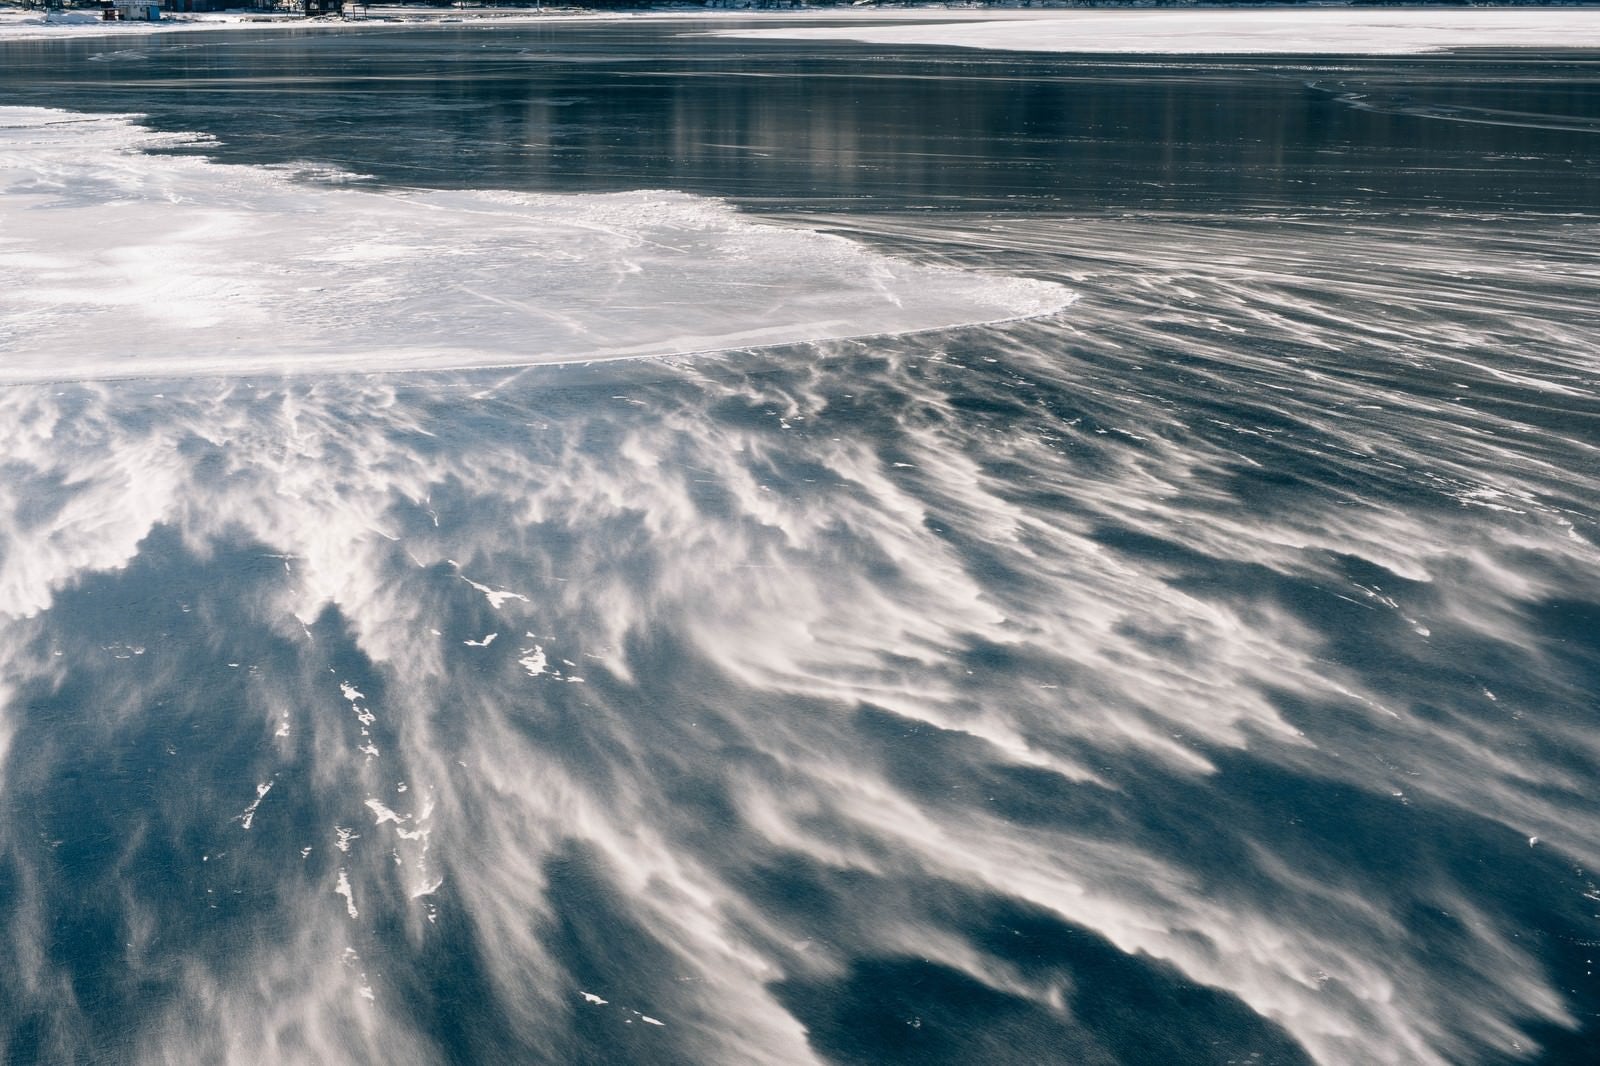 「赤城山大沼の雪と風のアート」の写真